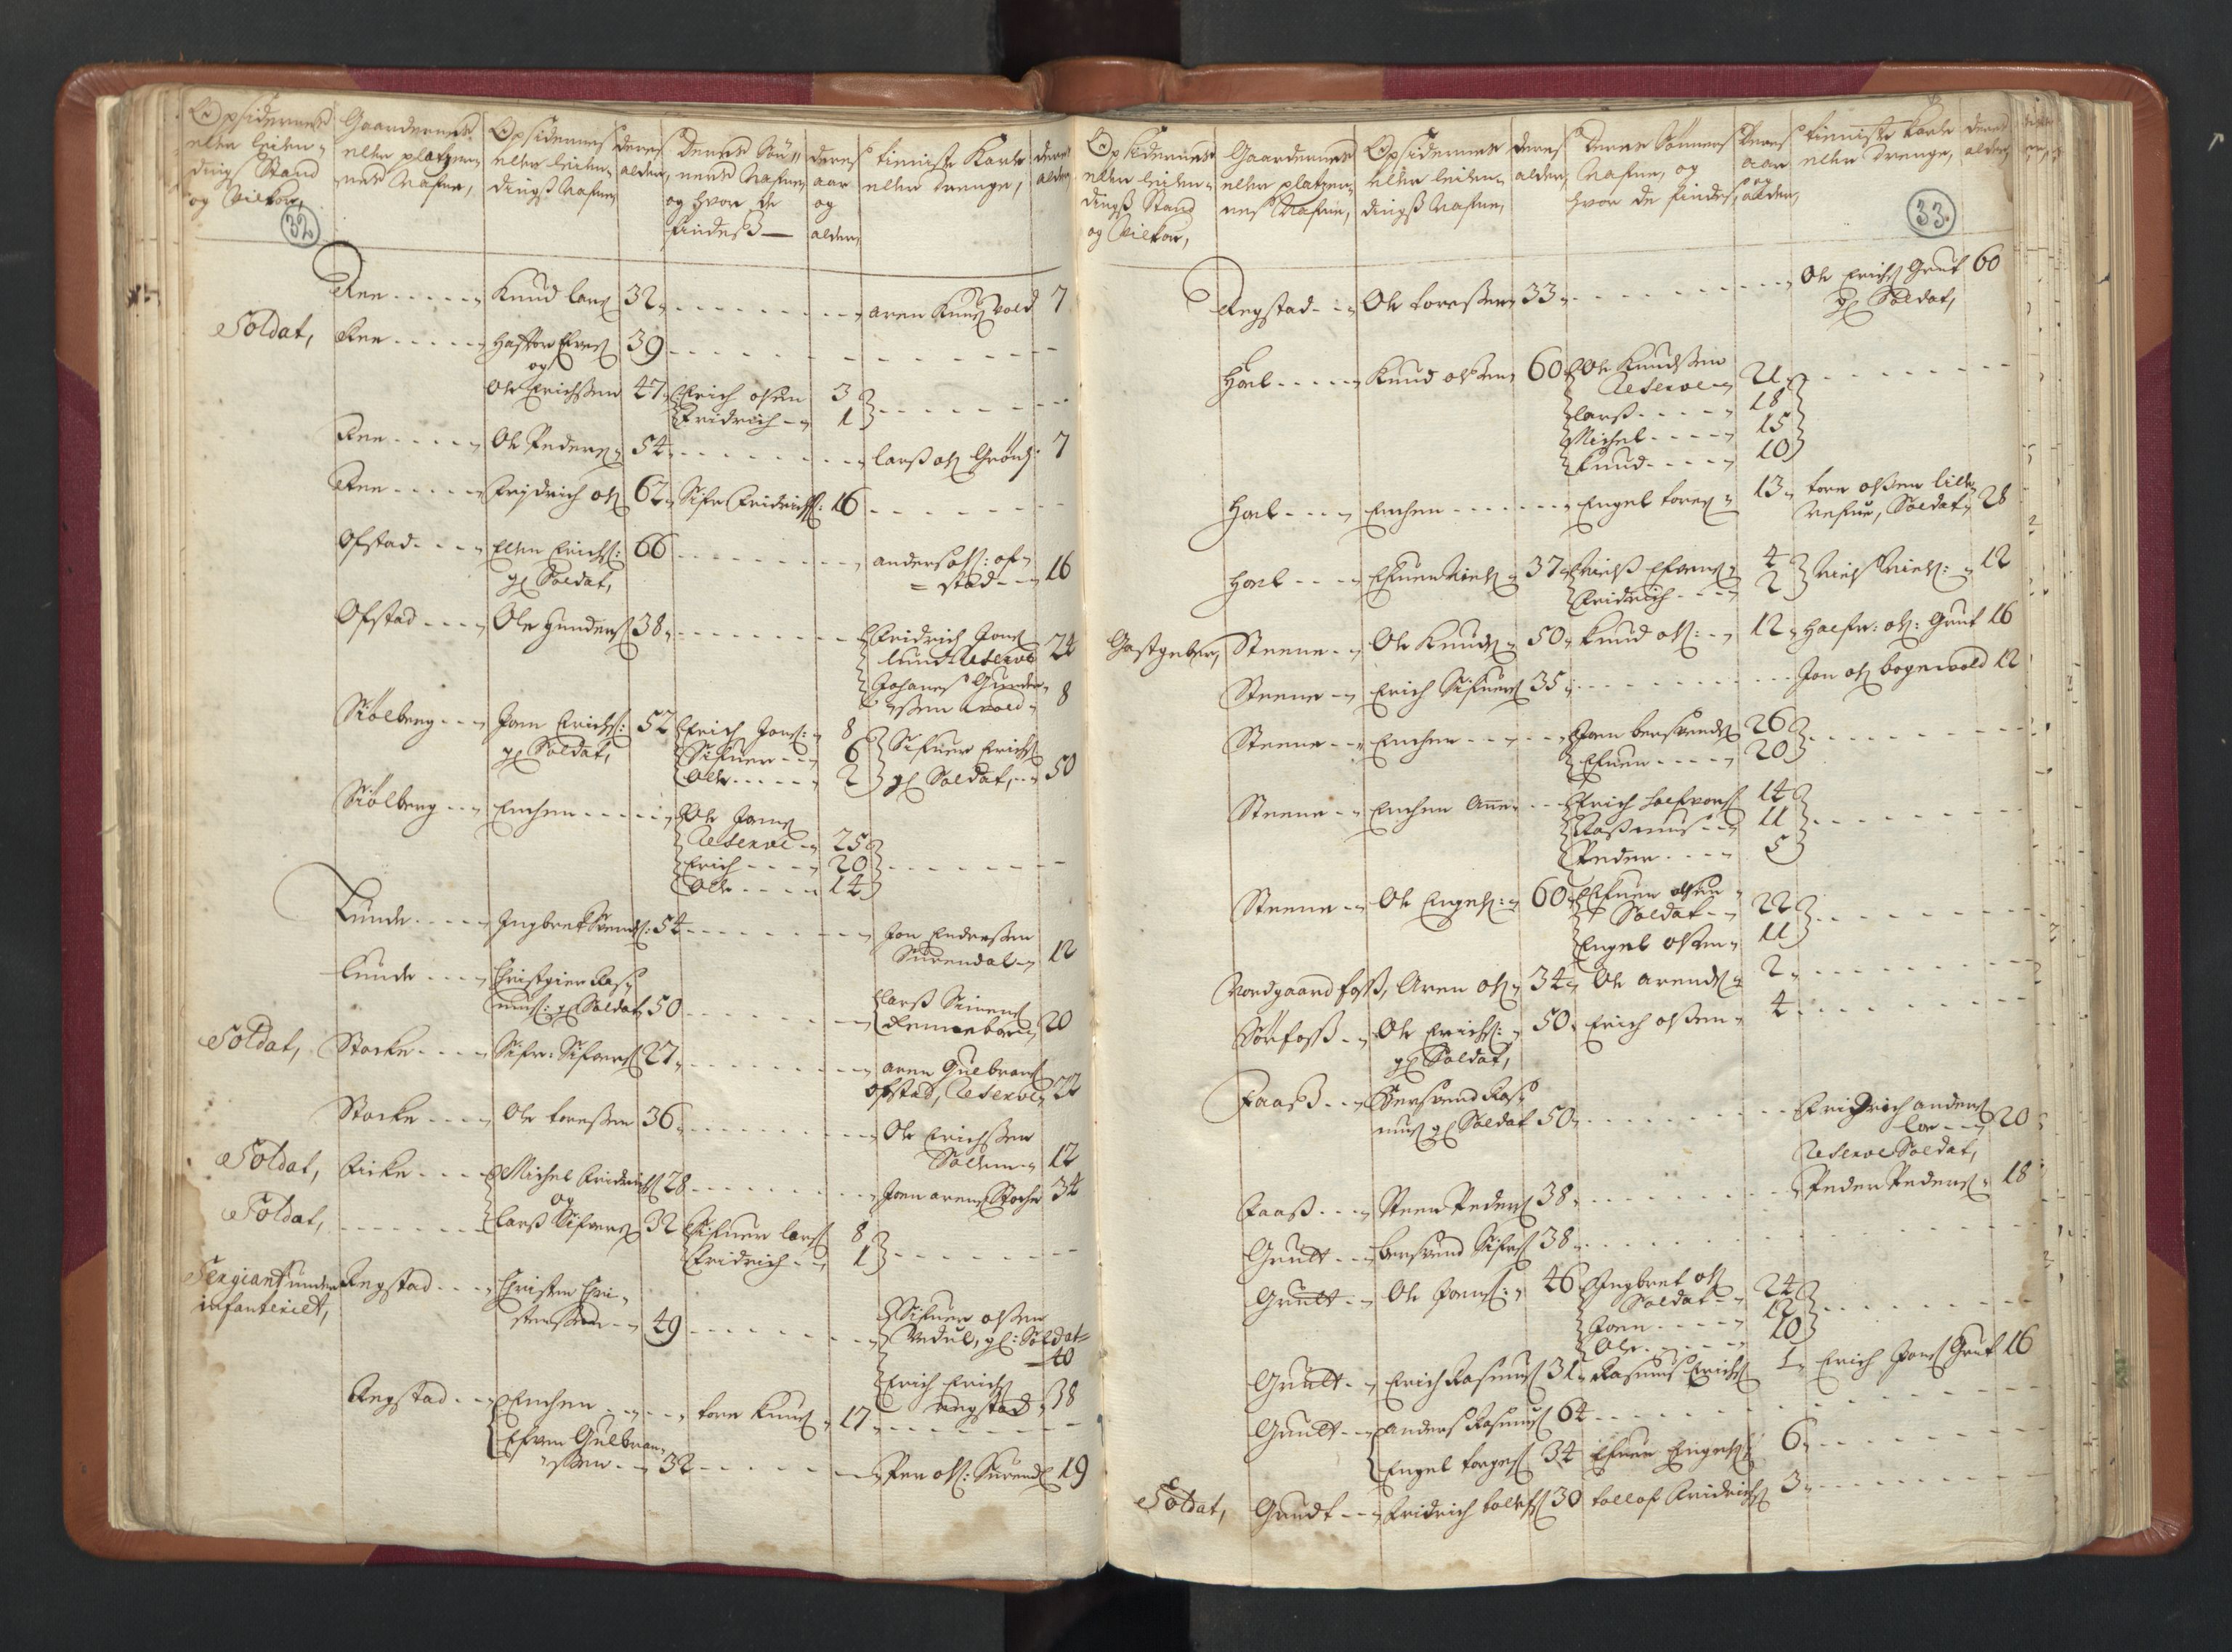 RA, Manntallet 1701, nr. 13: Orkdal fogderi og Gauldal fogderi med Røros kobberverk, 1701, s. 32-33